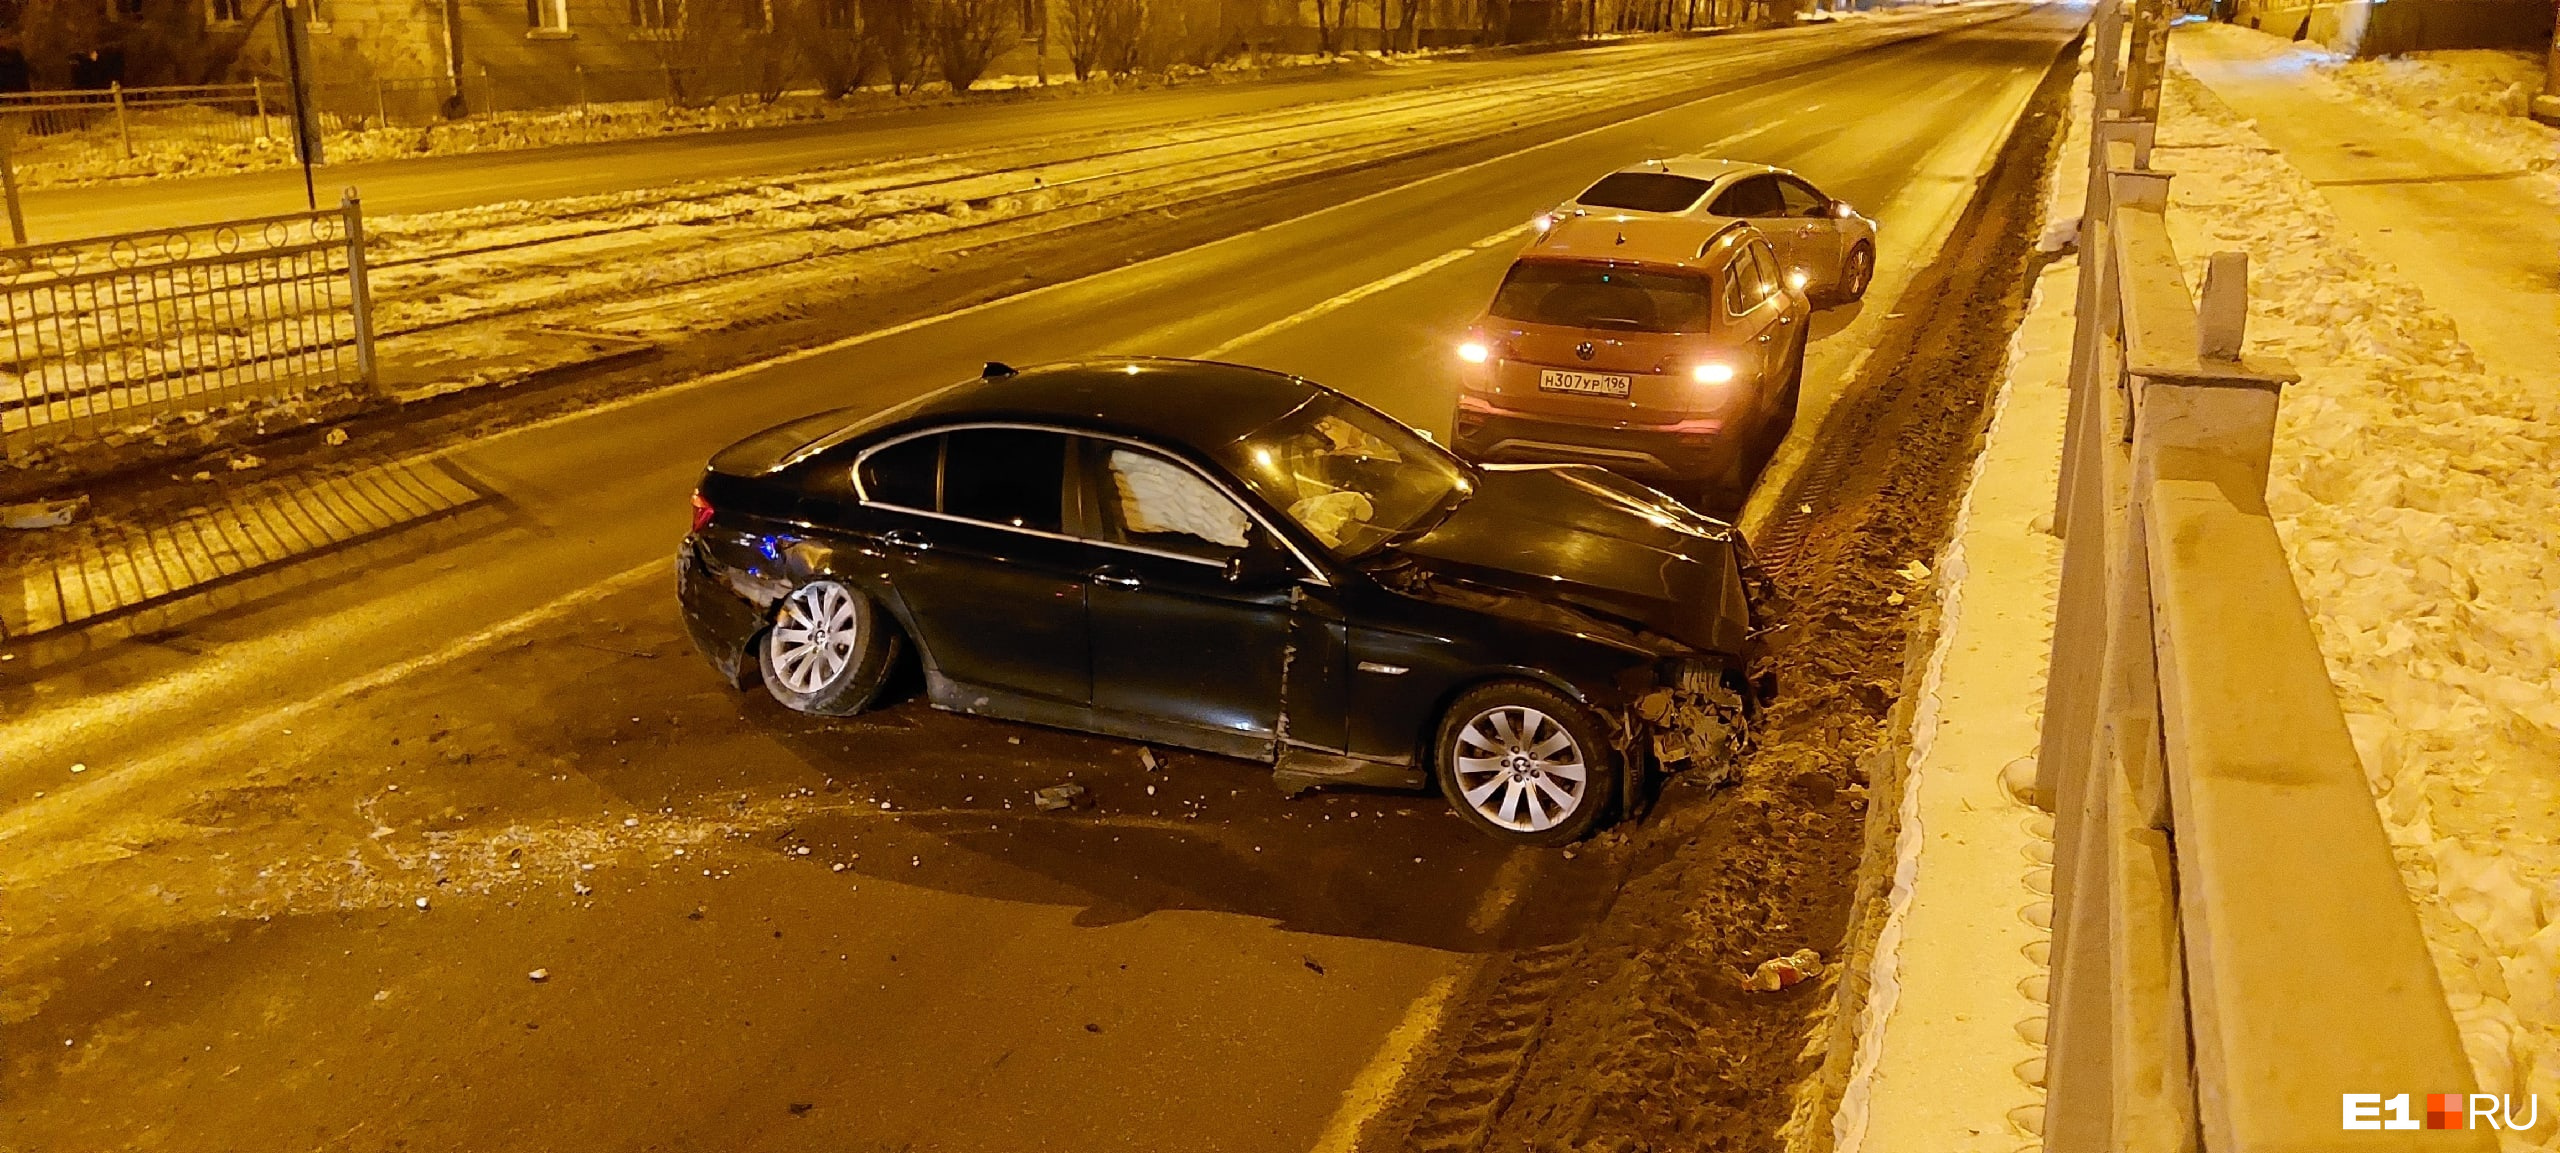 Стали известны подробности аварии на Уралмаше, где водитель BMW разнес остановку и бросил машину